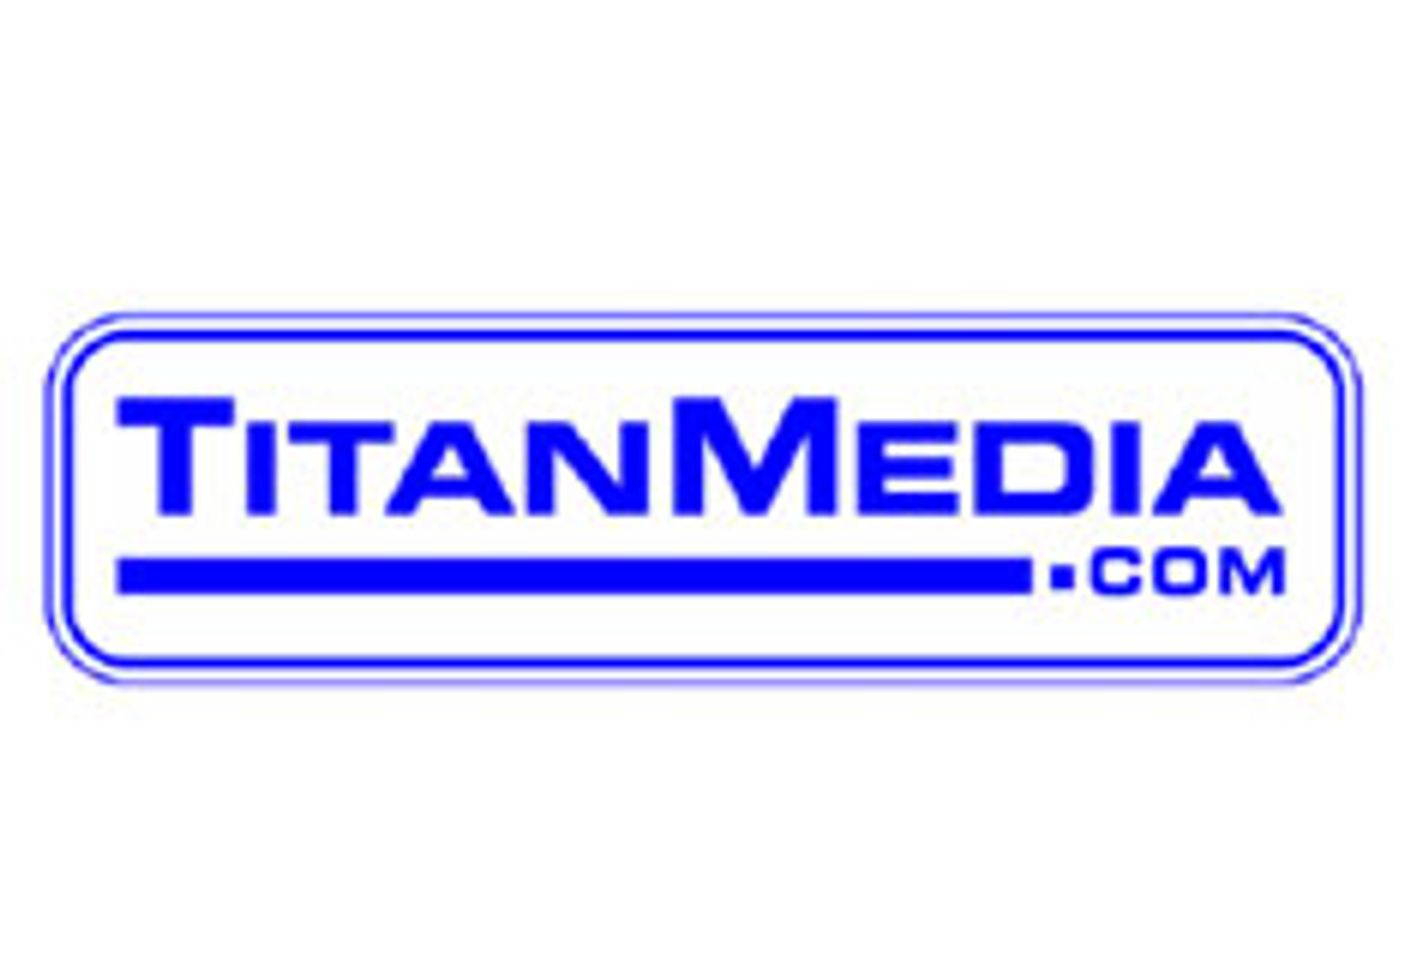 Company Profile: Titan Media